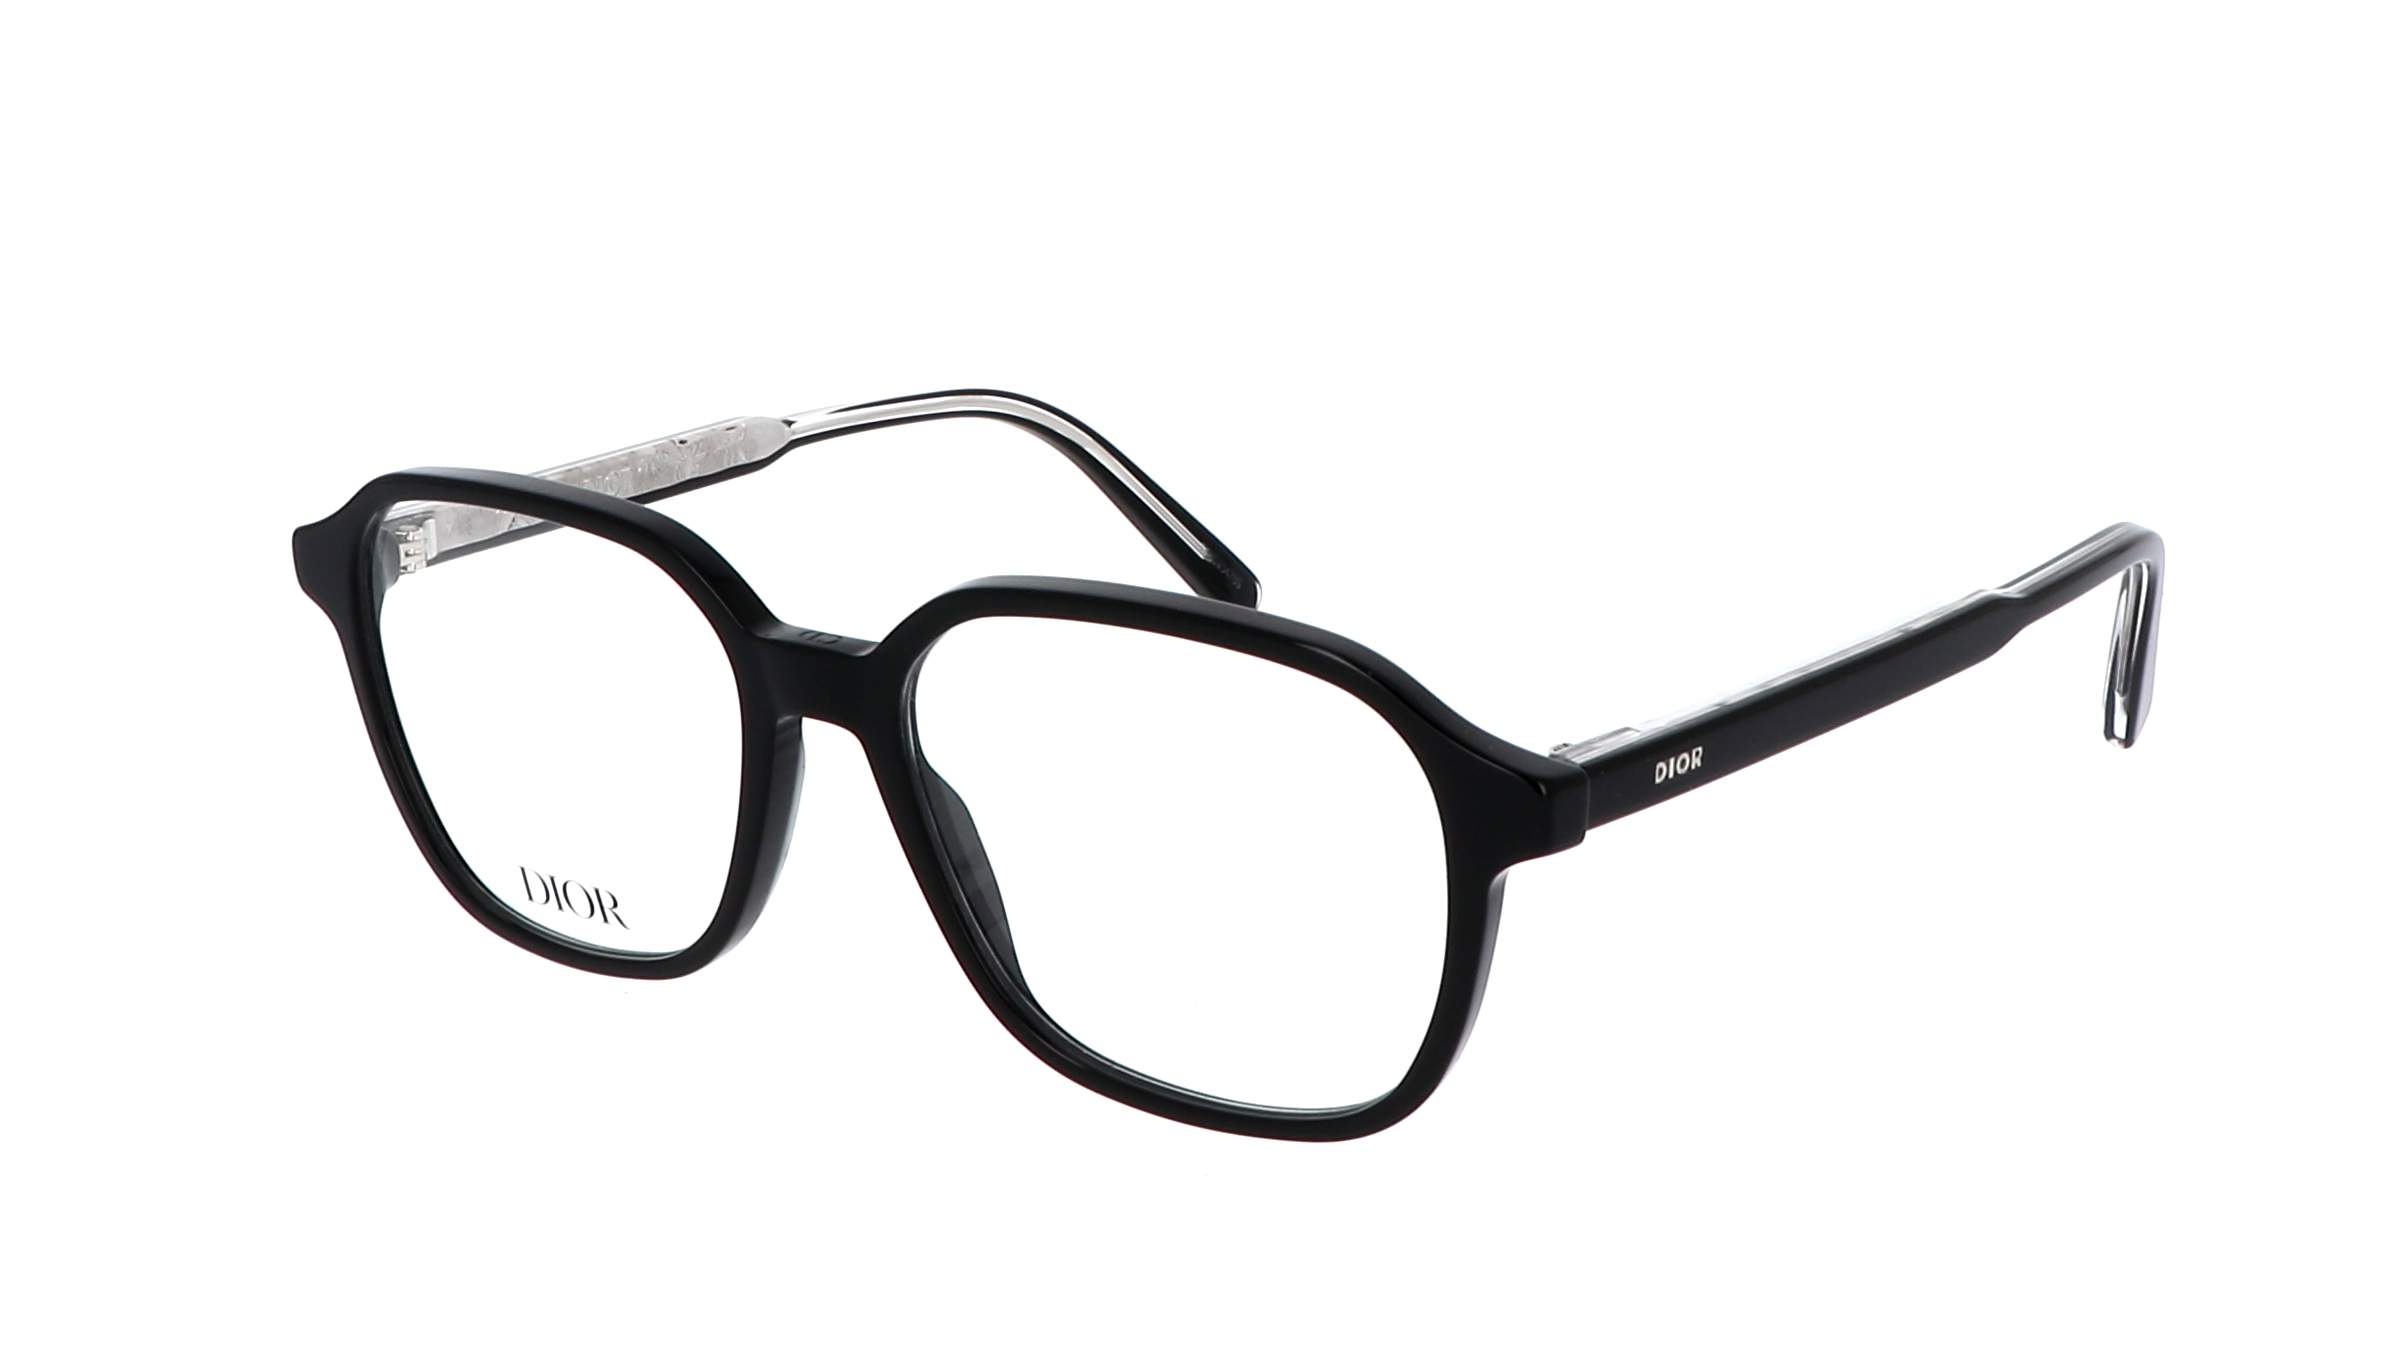 Eyeglasses DIOR INDIORO S3I 1000 53-16 Black in stock | Price 216,67 ...